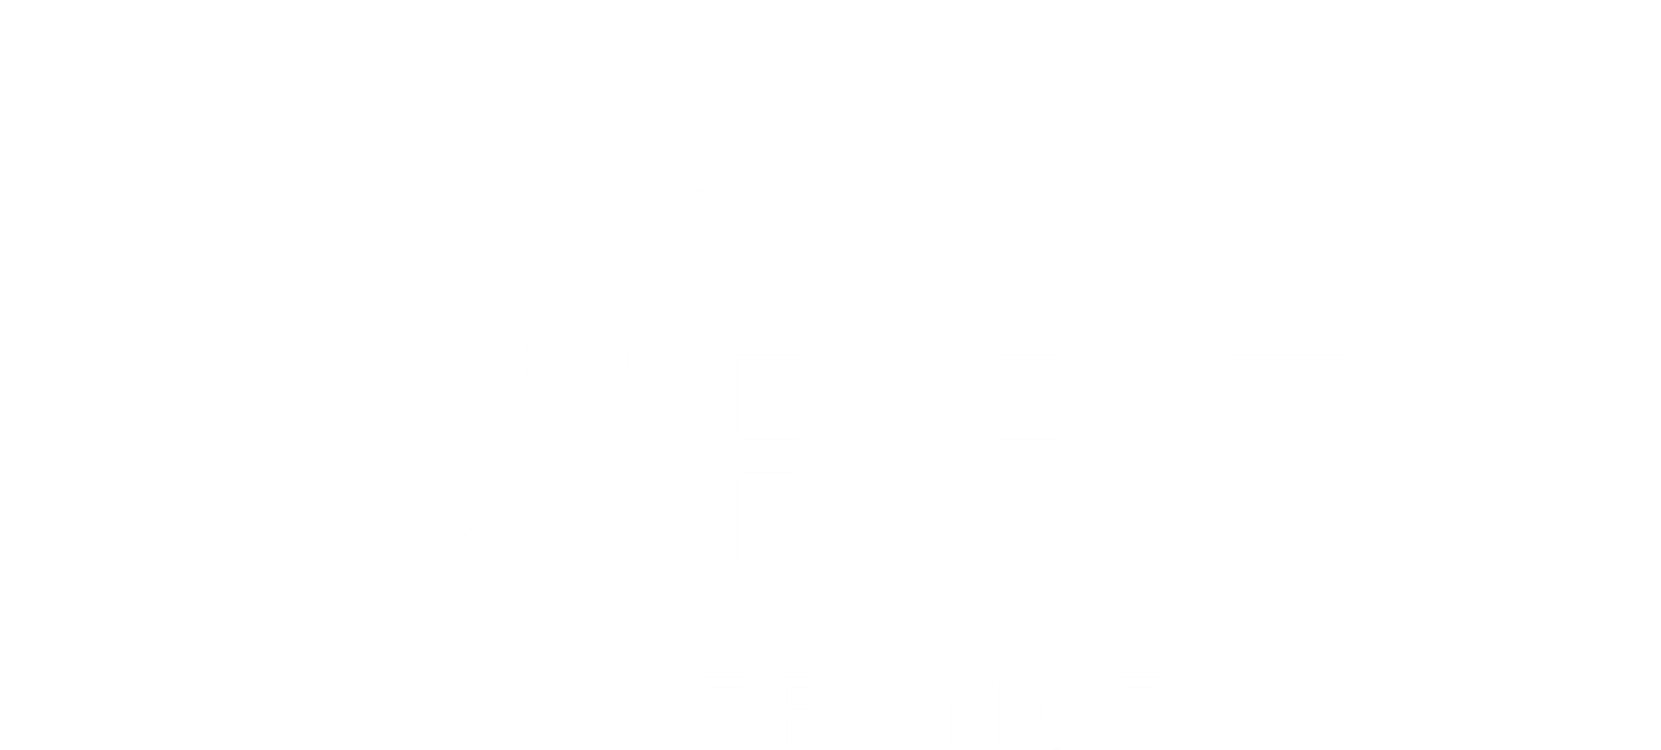 Orpea fondation